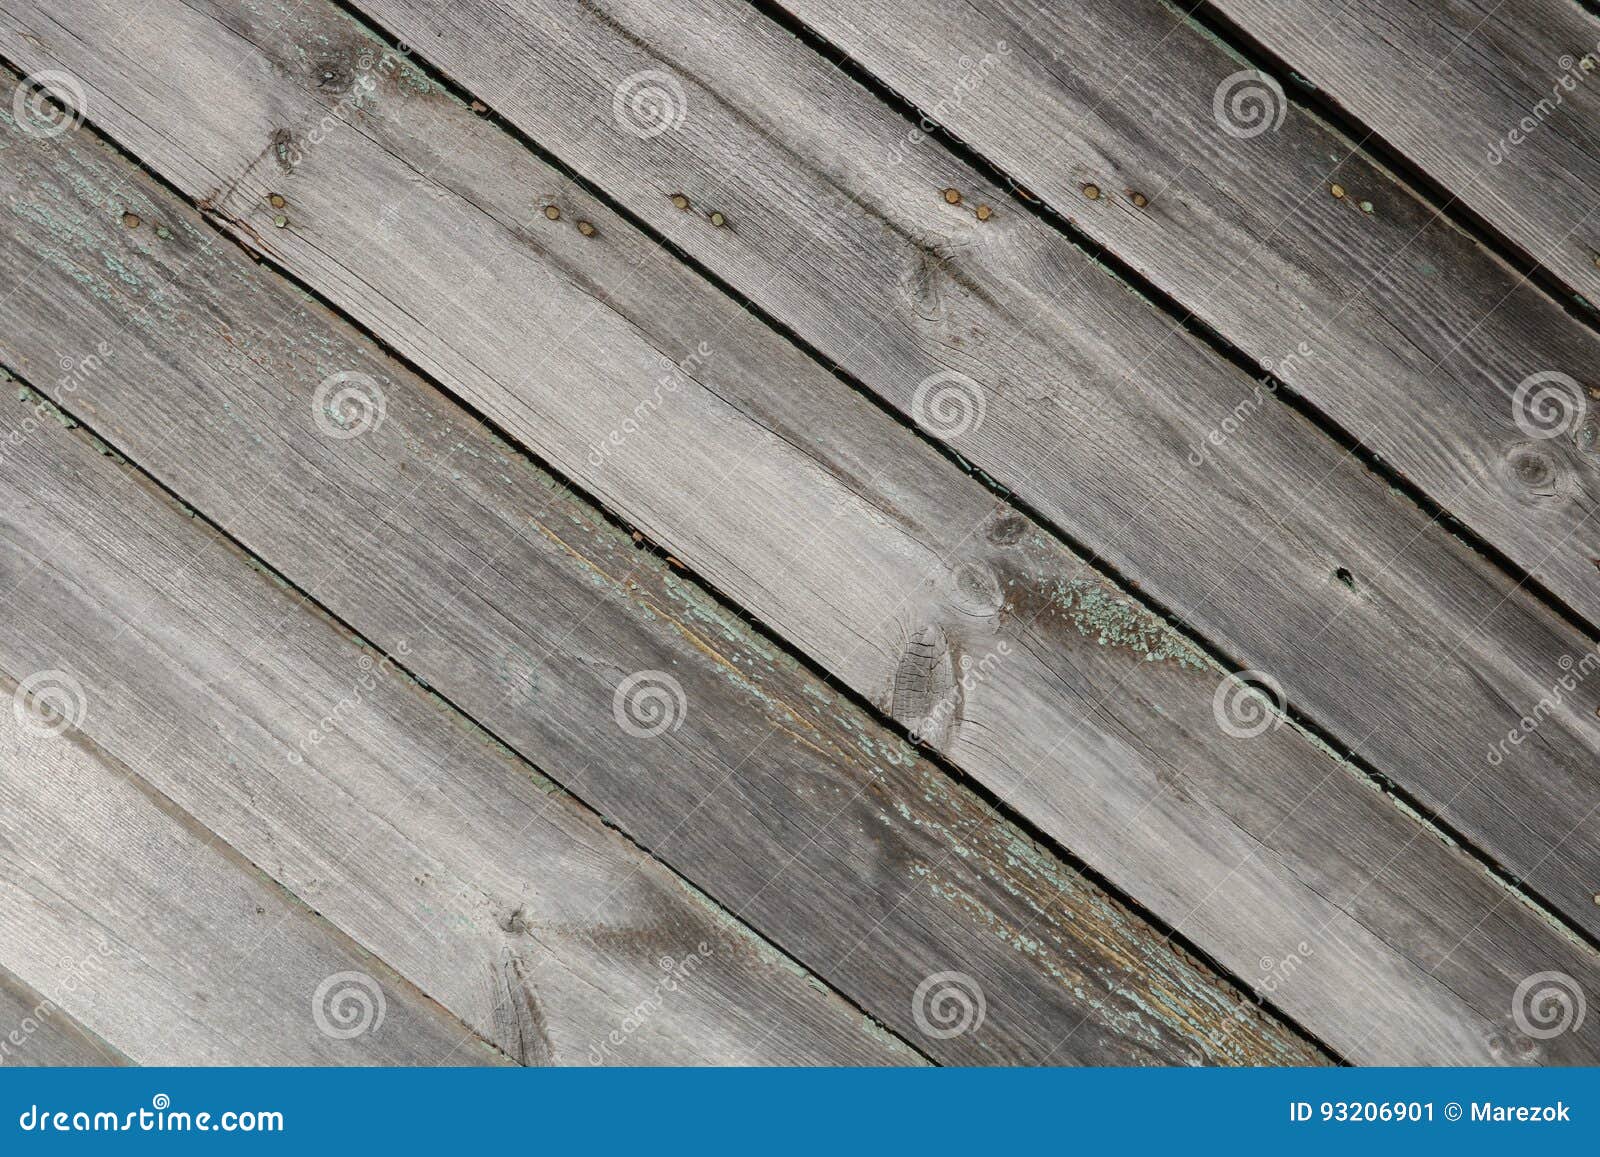 Wooden Garage Door Texture Stock Image Image Of Floor 93206901